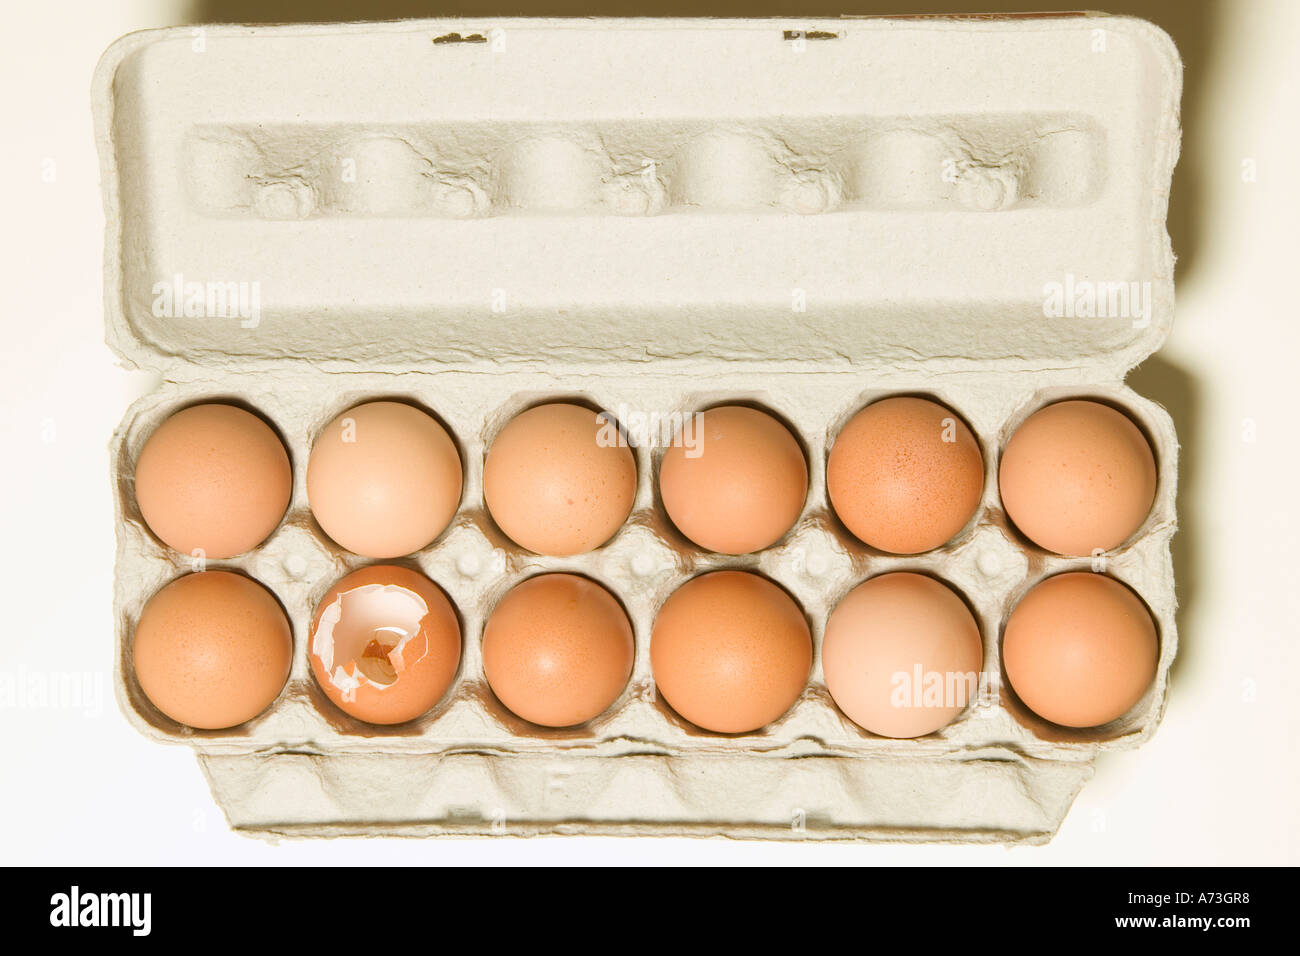 Gebrochene Ei Ein Dutzend Eier Stockfotografie Alamy